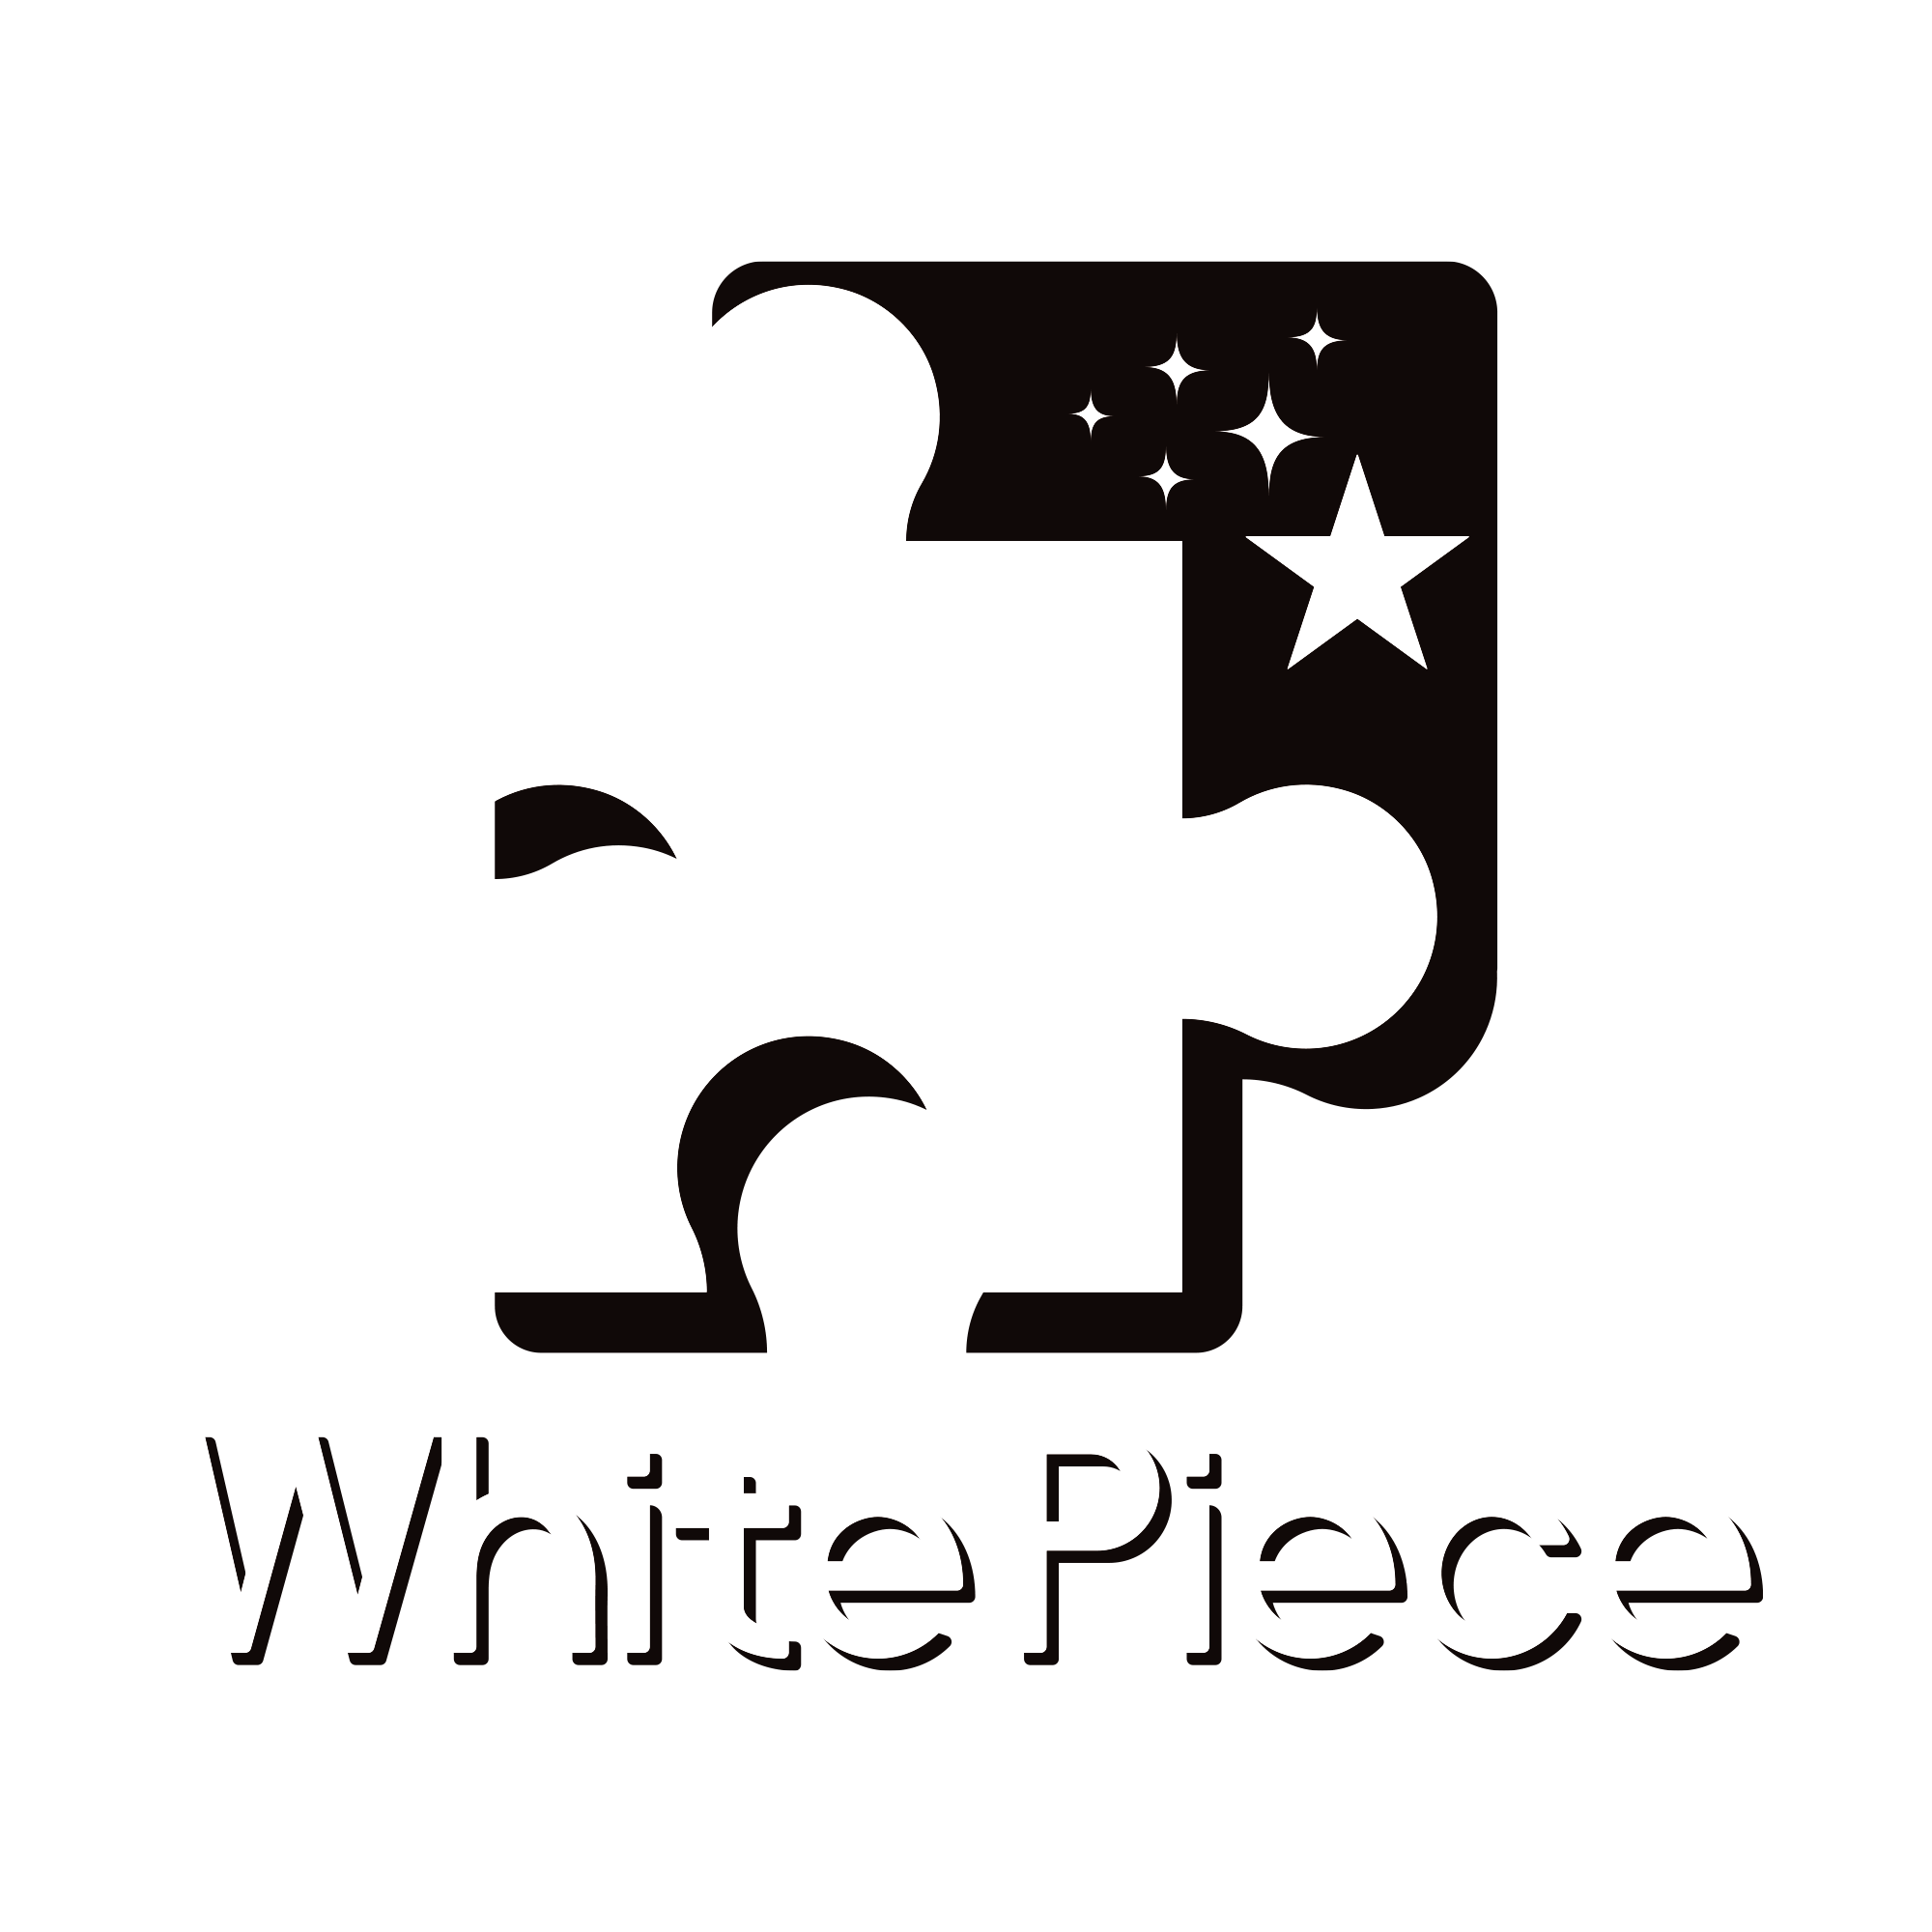 WhitePiece